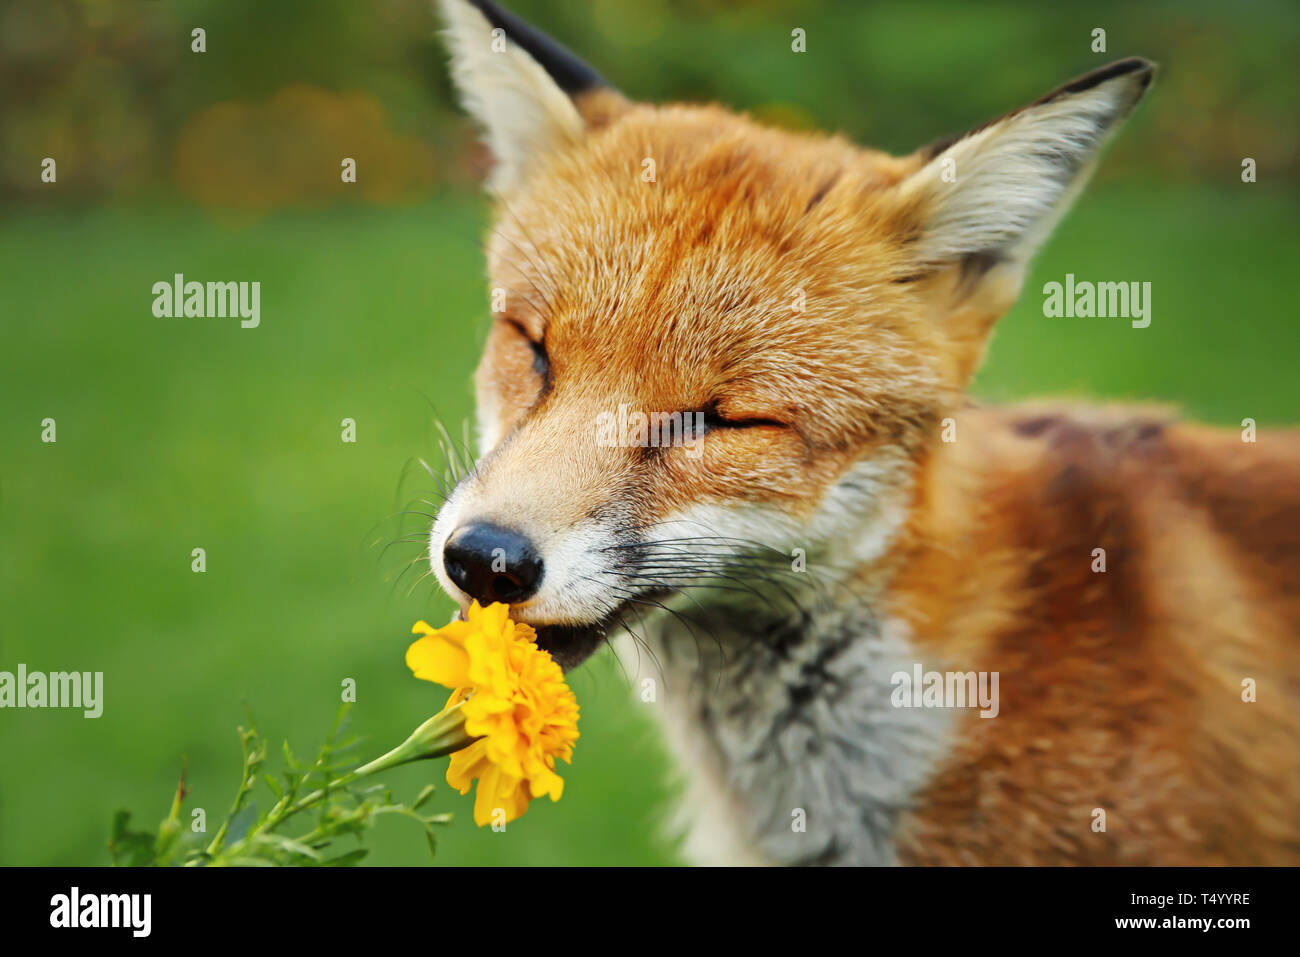 nahaufnahme-eines-red-fox-riechende-marigold-flower-uk-t4yyre.jpg